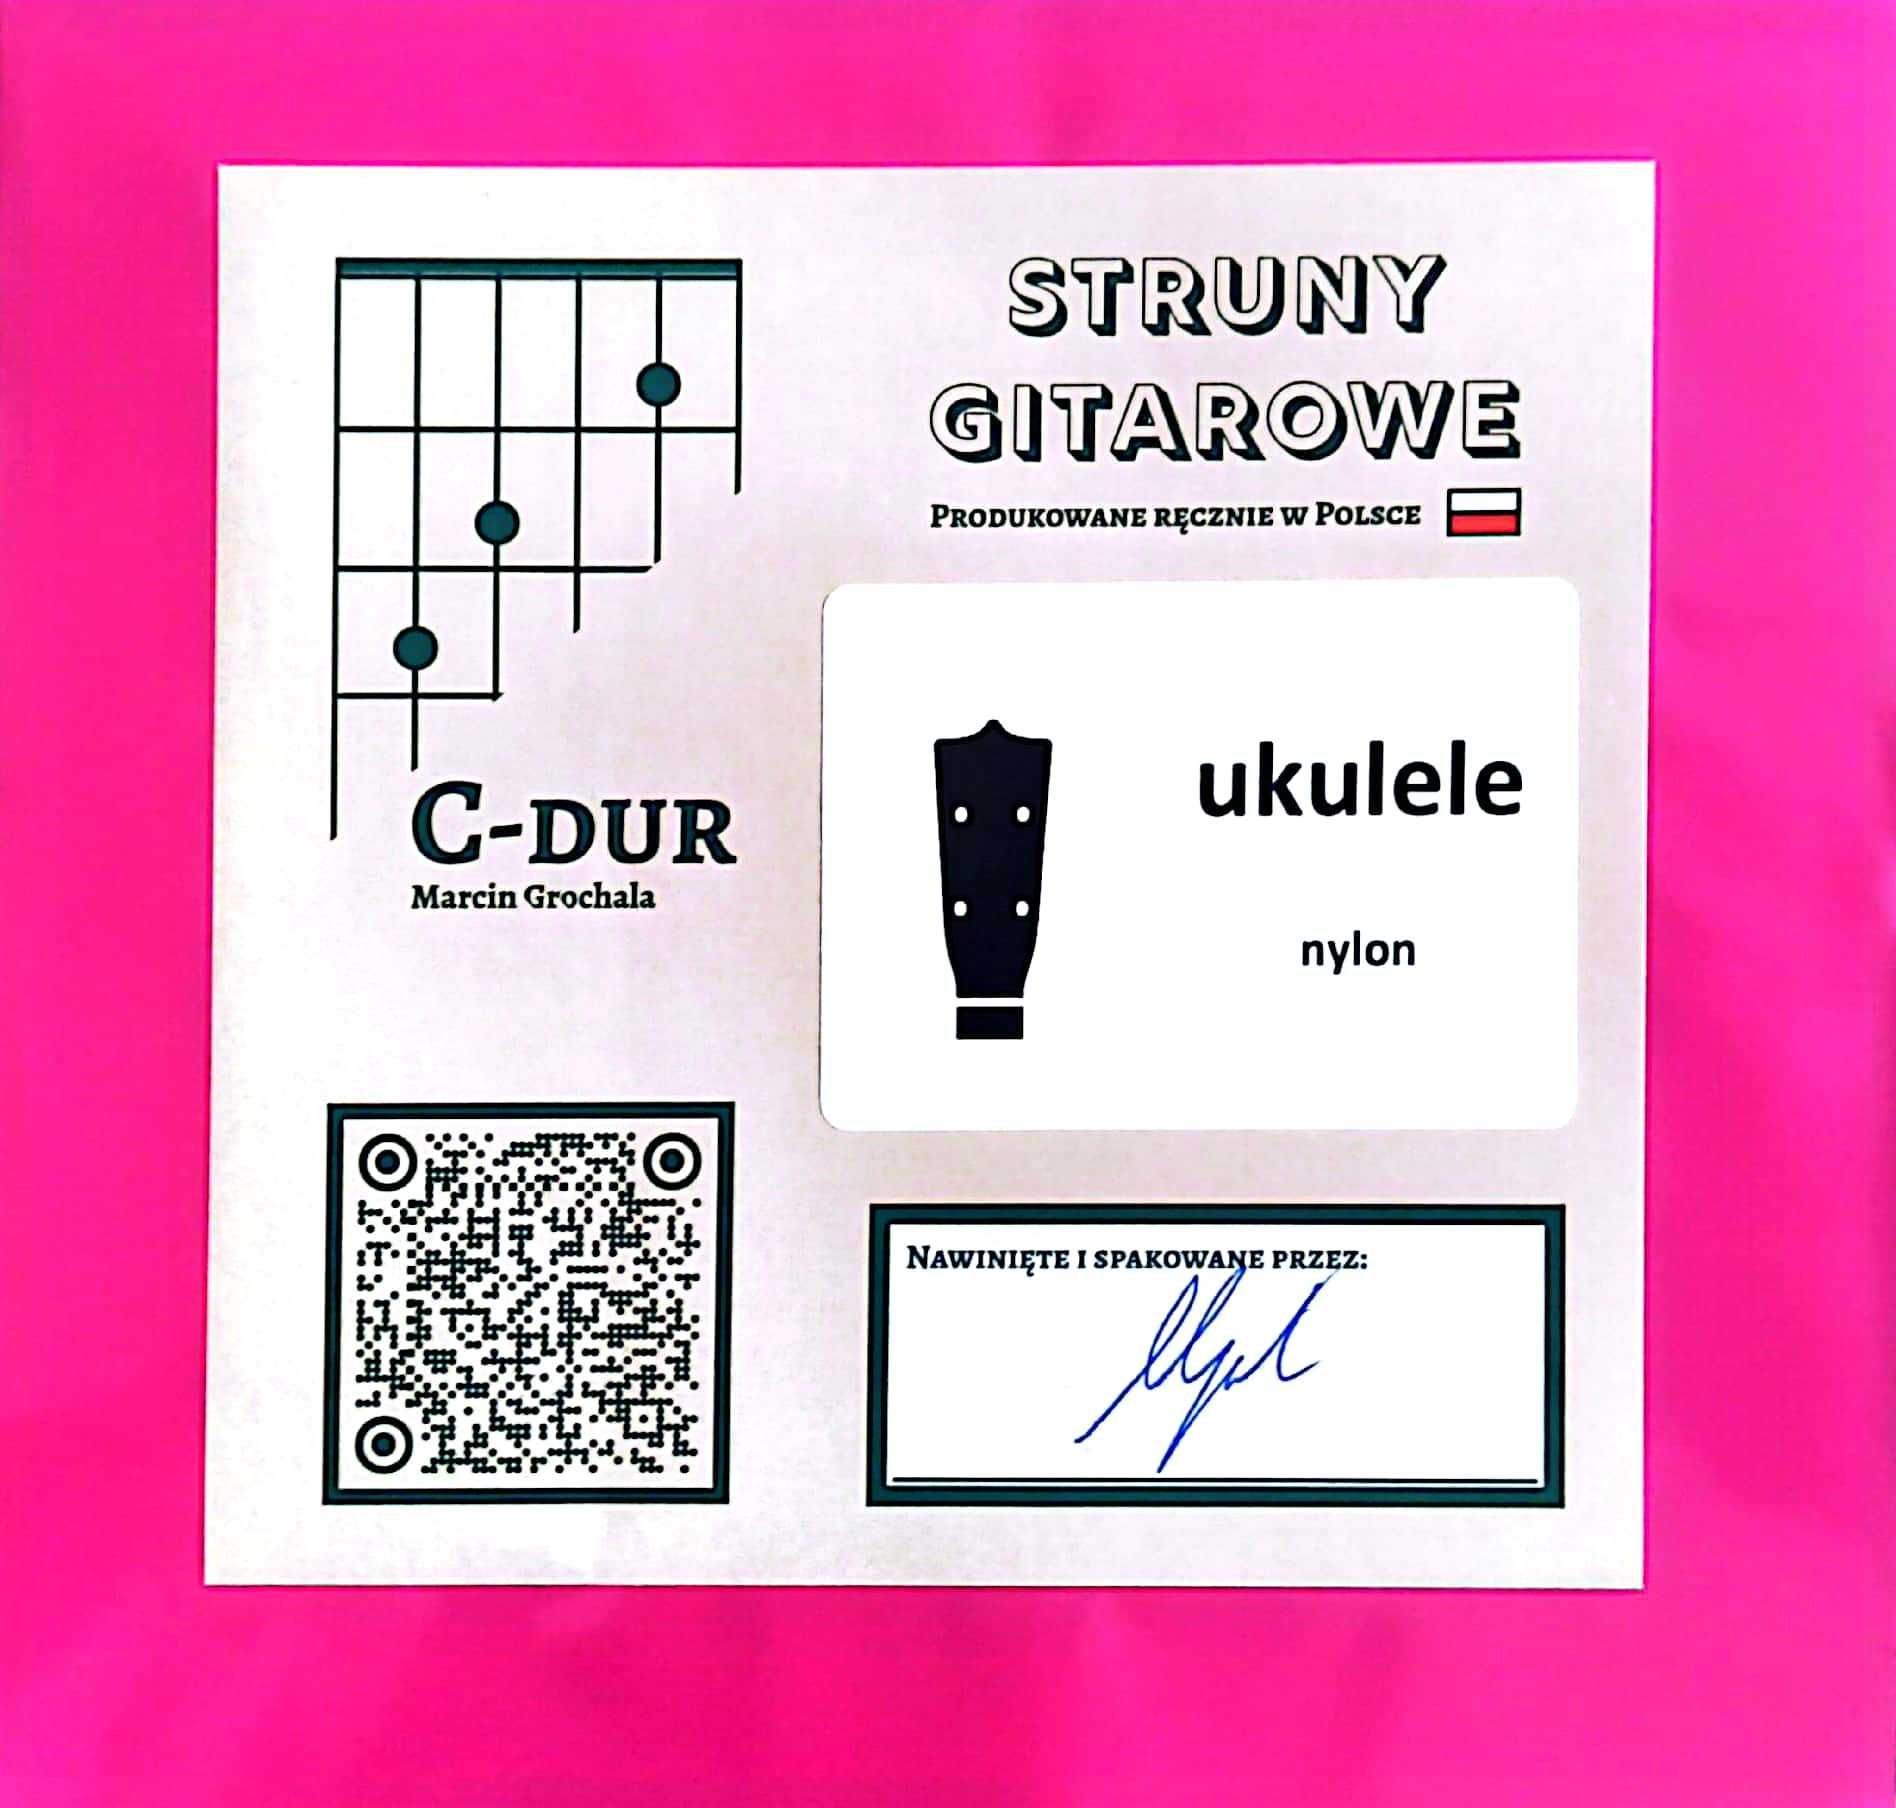 Struny C-dur - ukulele